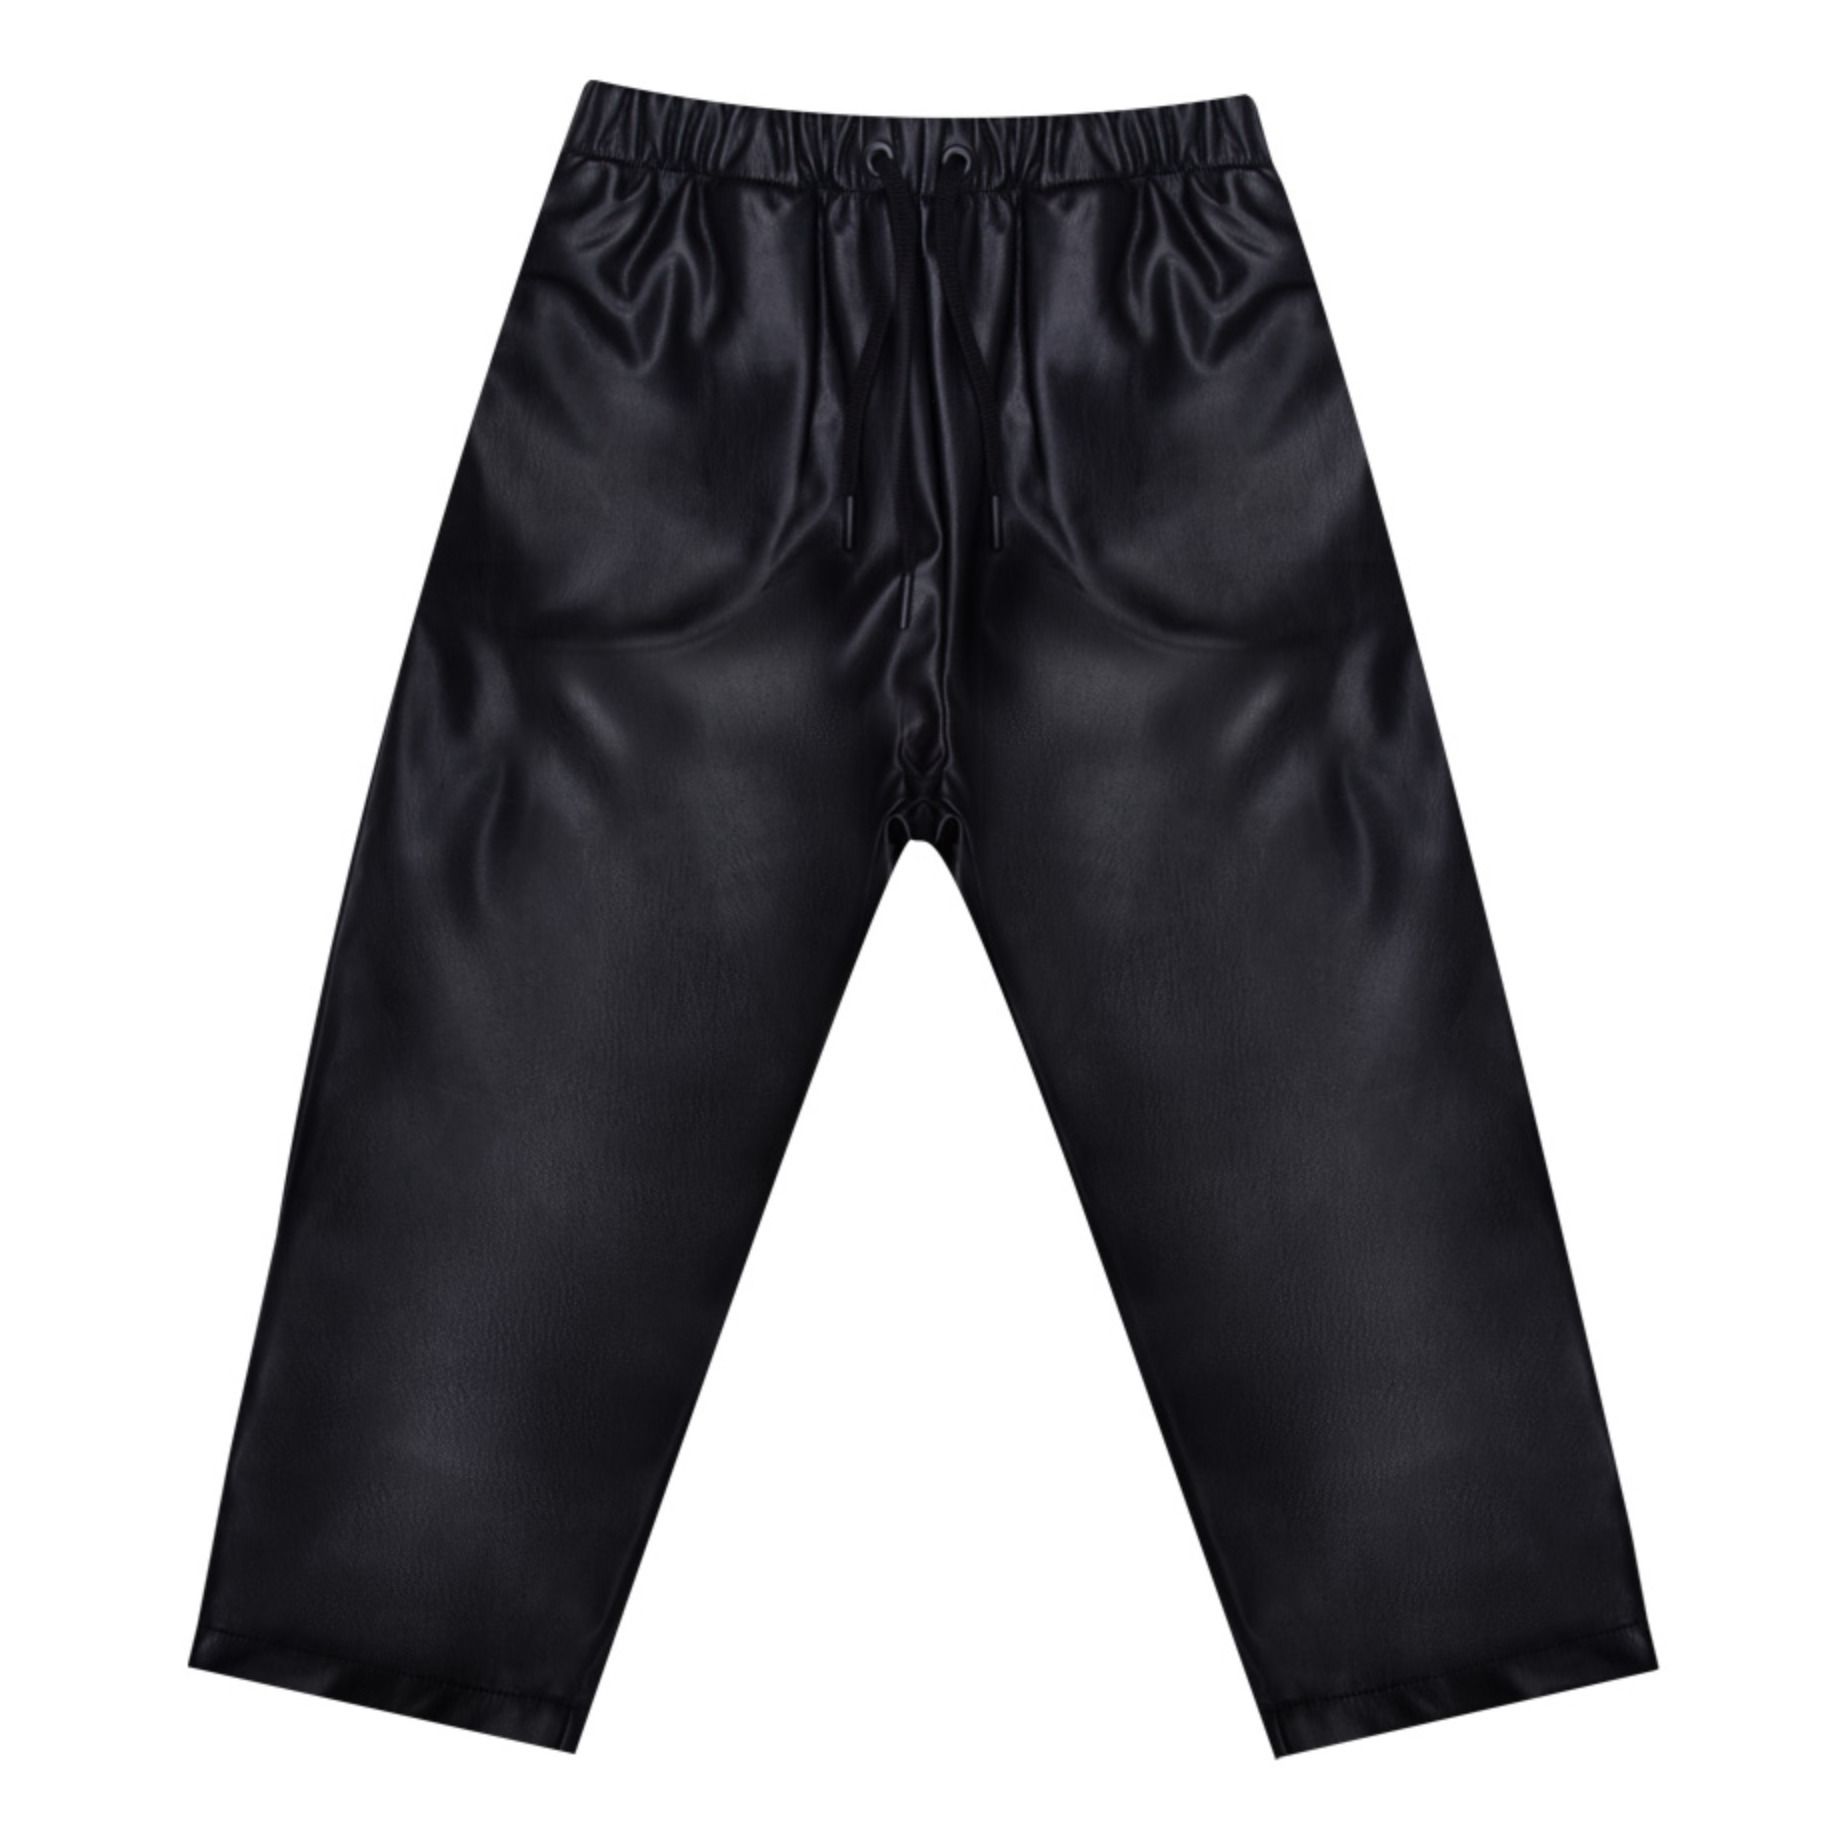 the new society - Pantalon Cuir RecyclÃ© - Fille - Noir